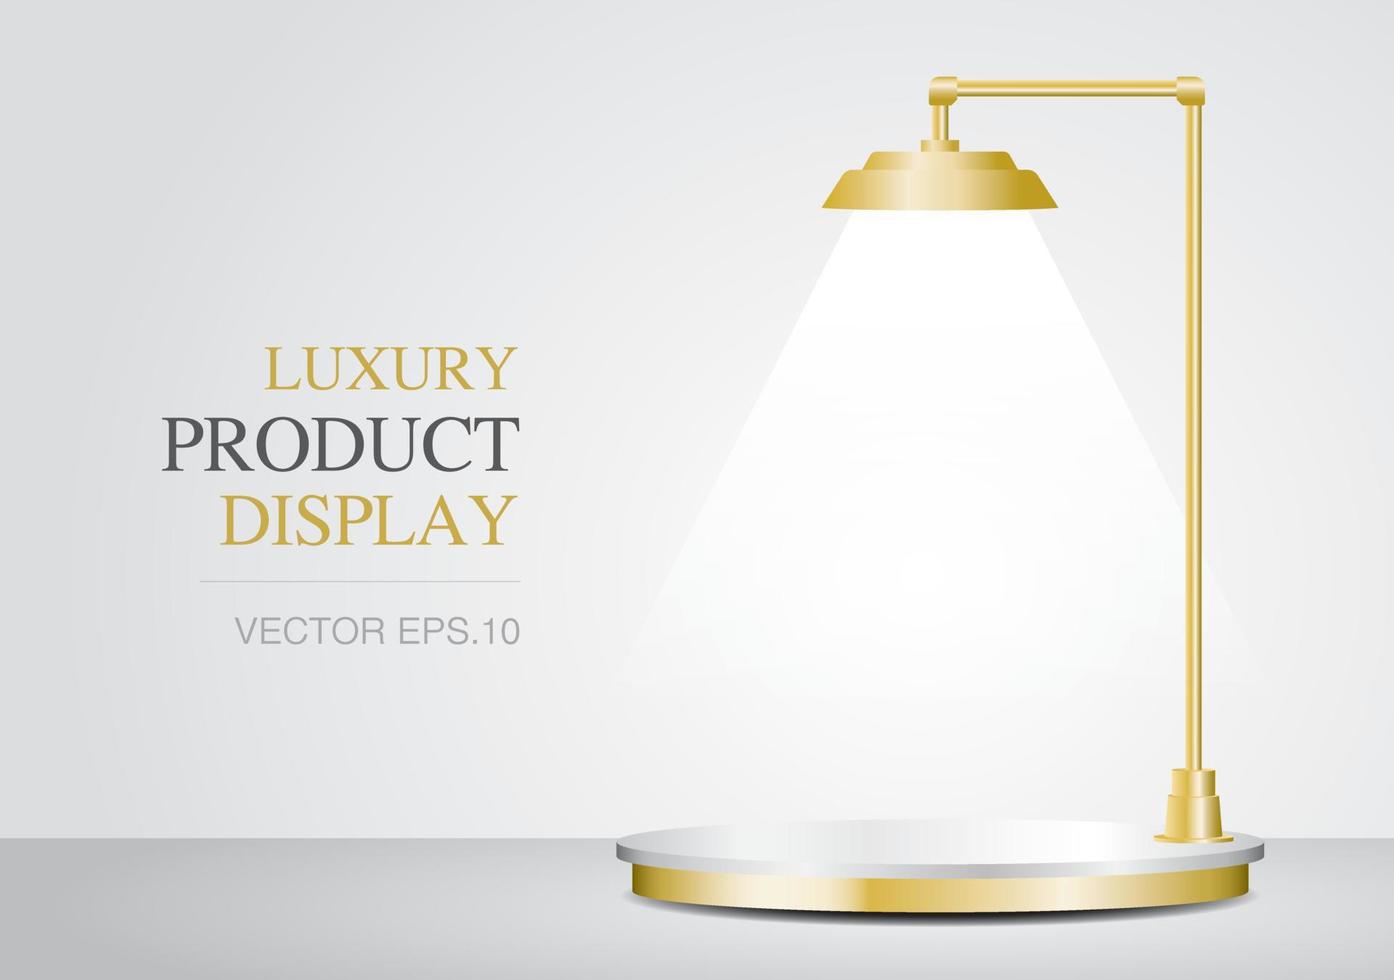 pódio de ouro de luxo com vetor de ilustração 3d de lâmpadas para colocar seu objeto.